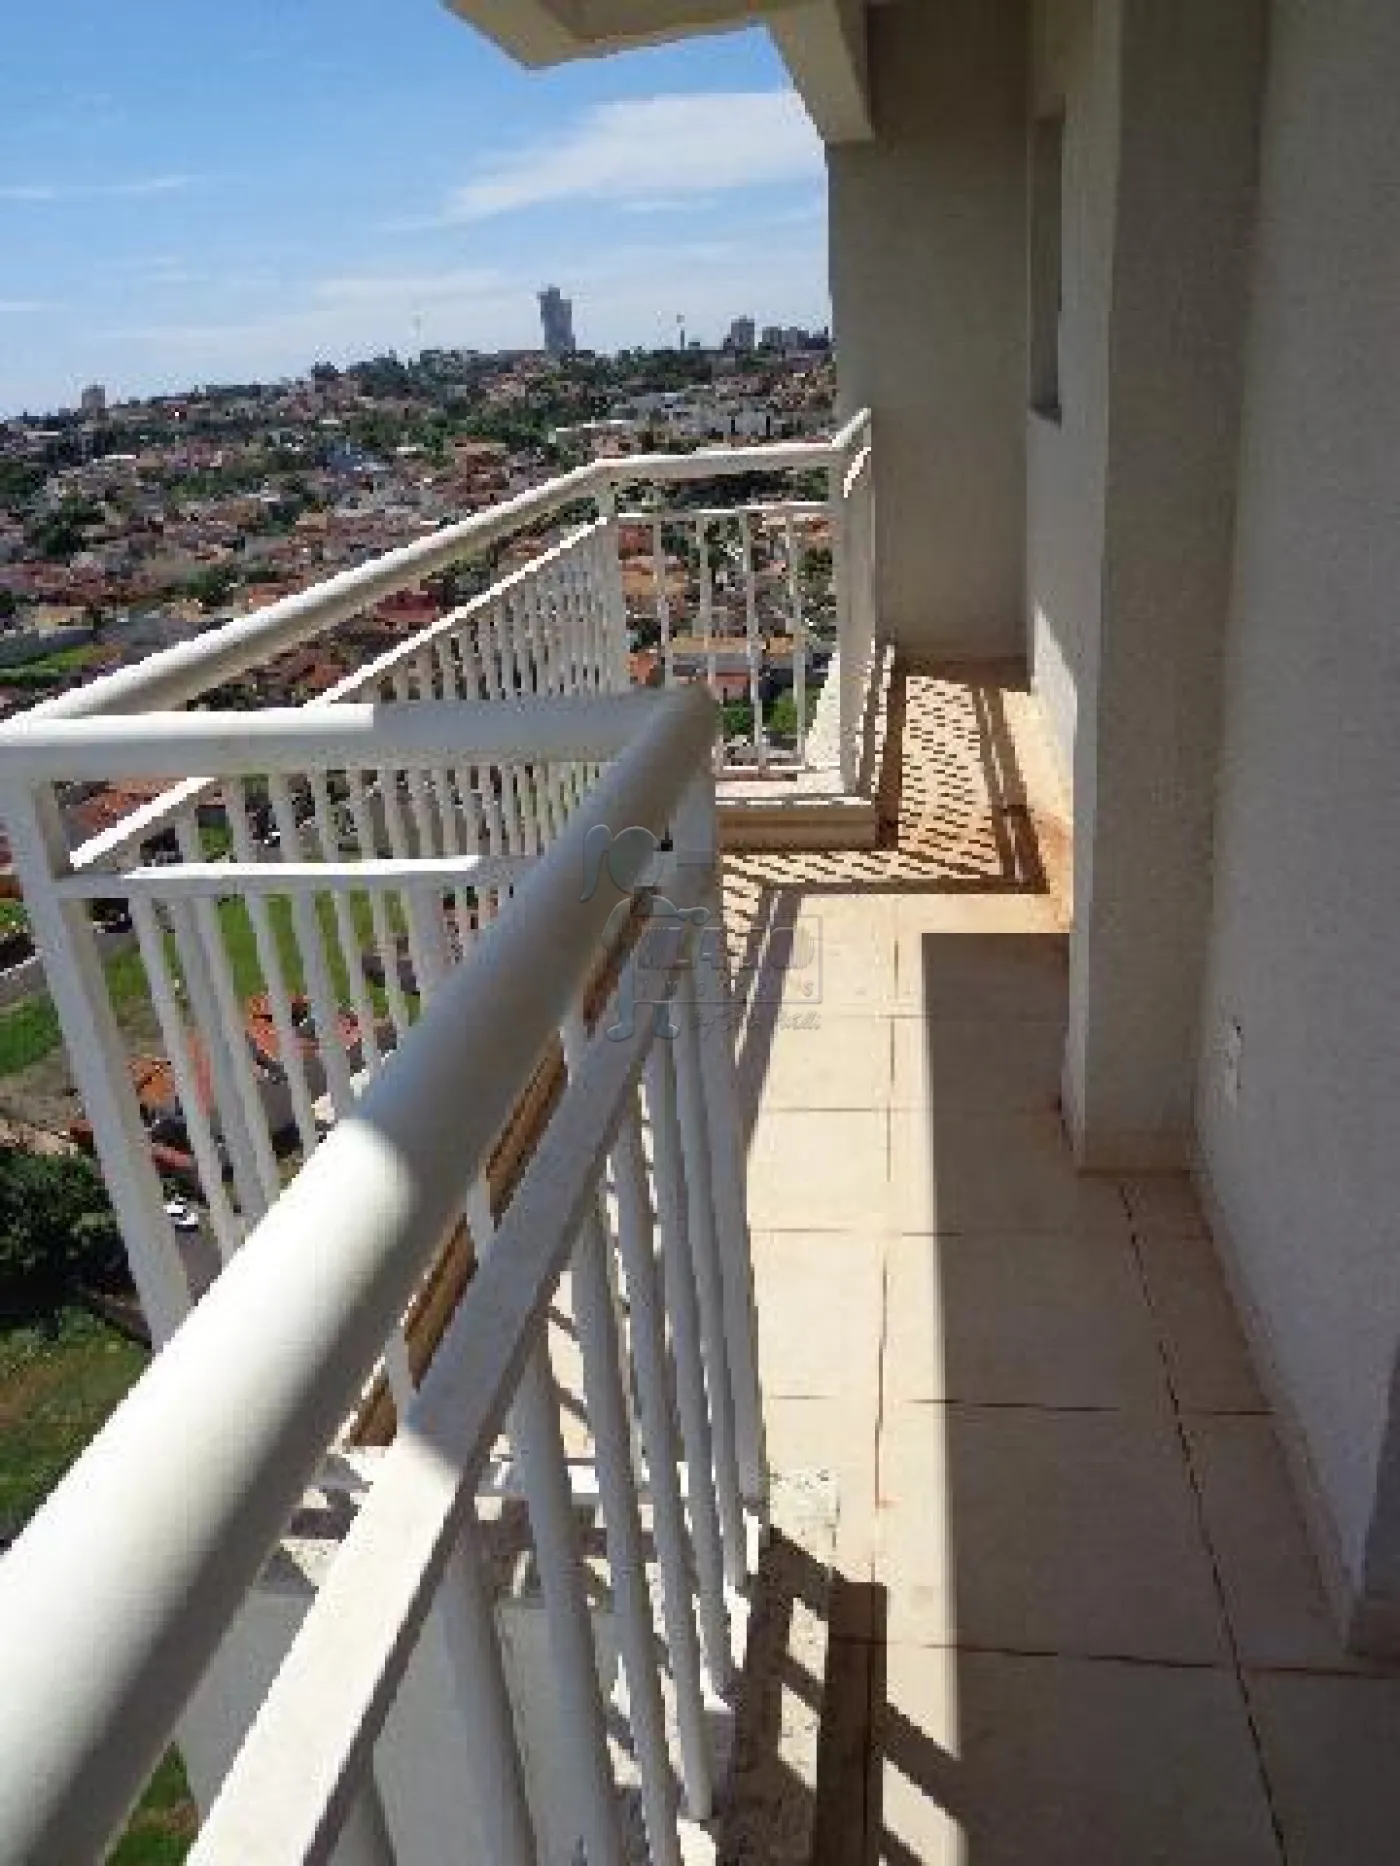 Alugar Apartamentos / Padrão em Ribeirão Preto R$ 1.600,00 - Foto 12